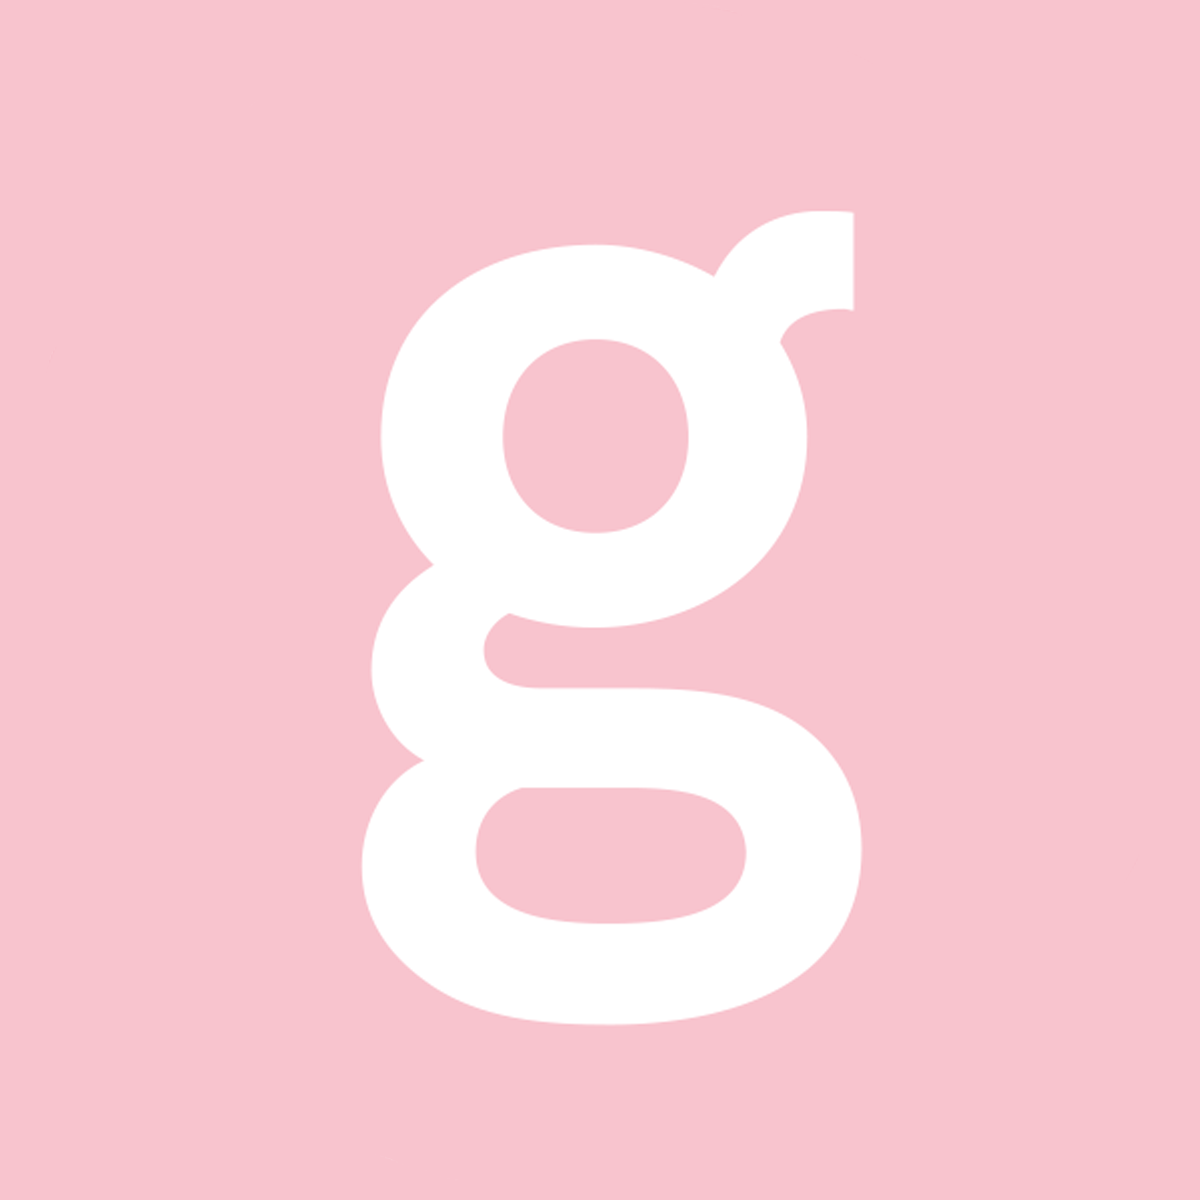 Glossy_Logos.png